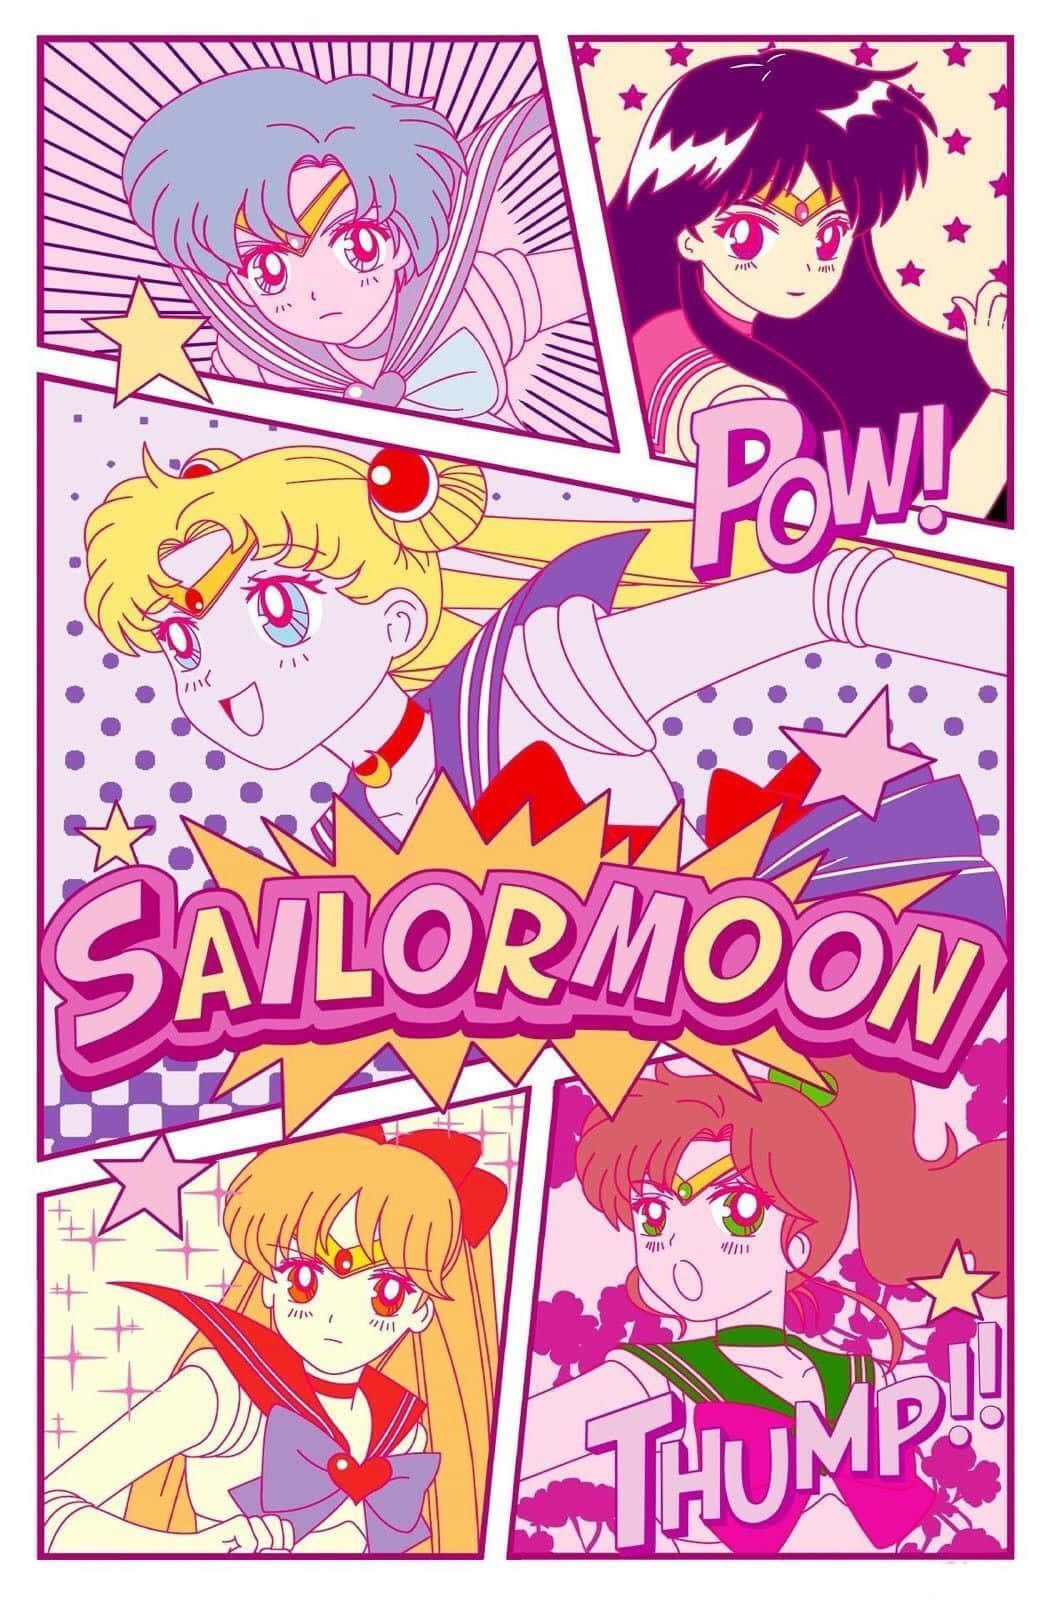 Begleitensie Uns Auf Unserem Ästhetischen Sailor Moon Abenteuer! Wallpaper